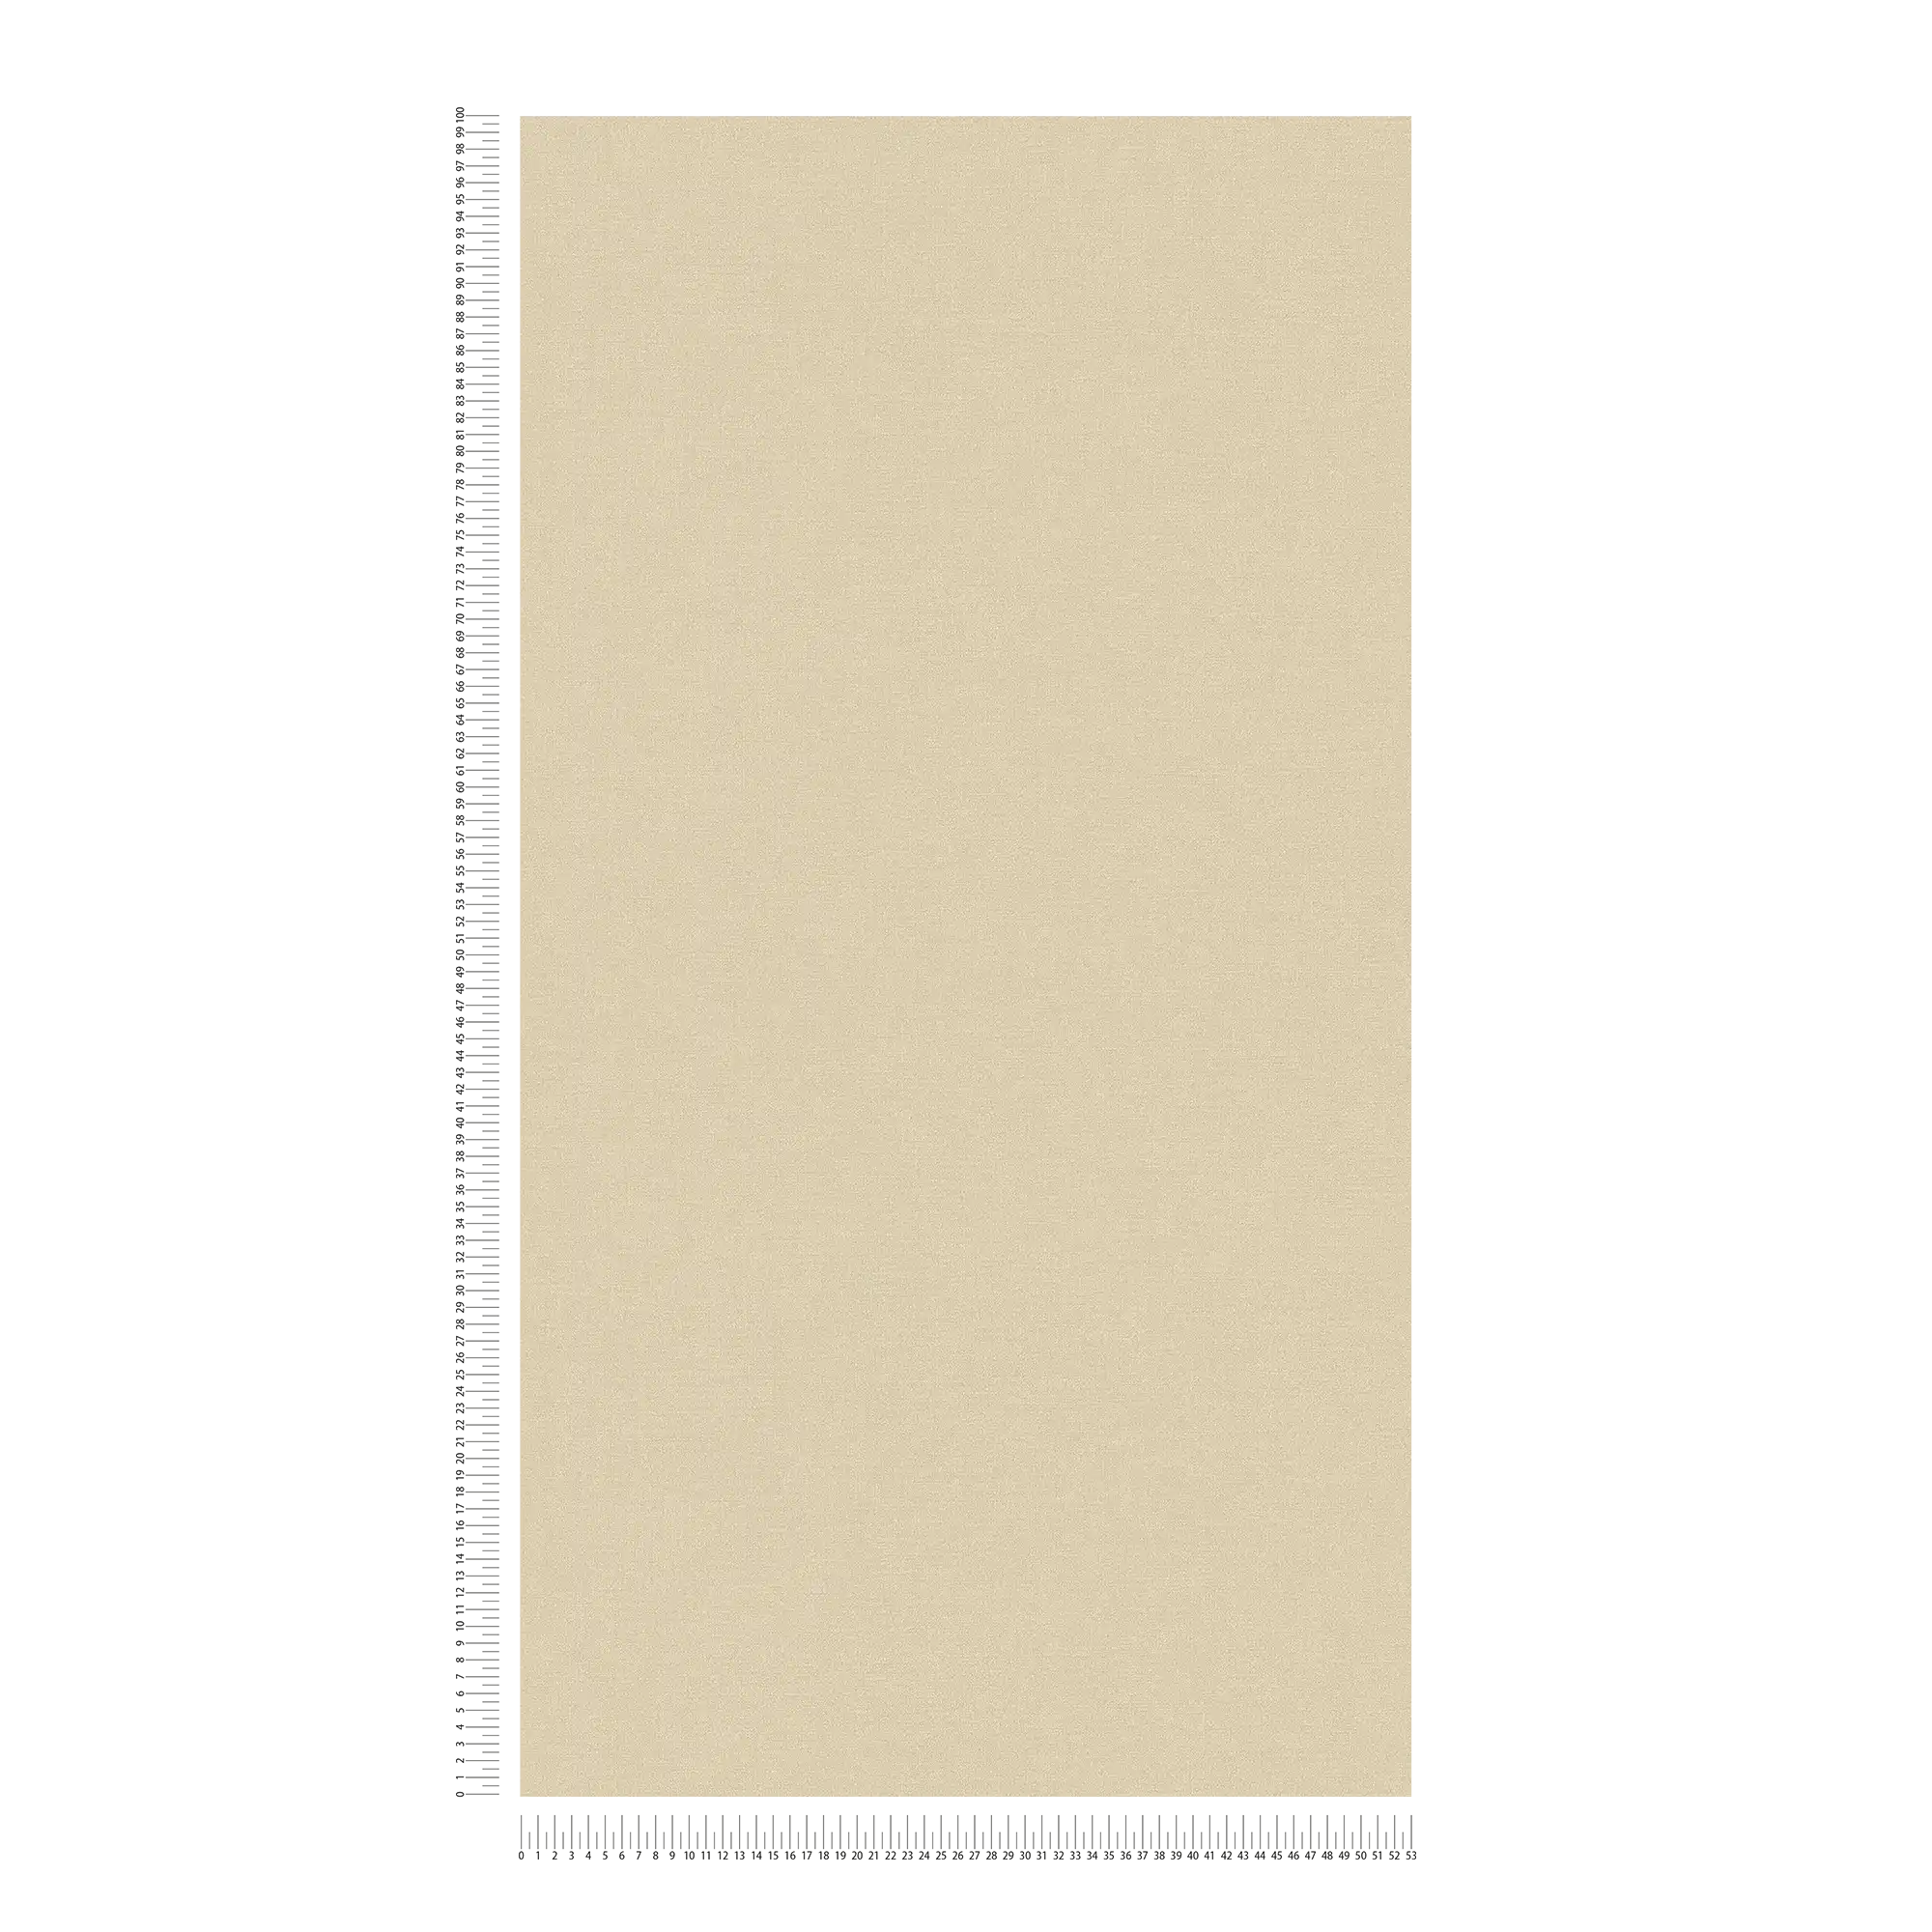             Carta da parati unitaria leggermente strutturata in una tonalità calda, il beige.
        